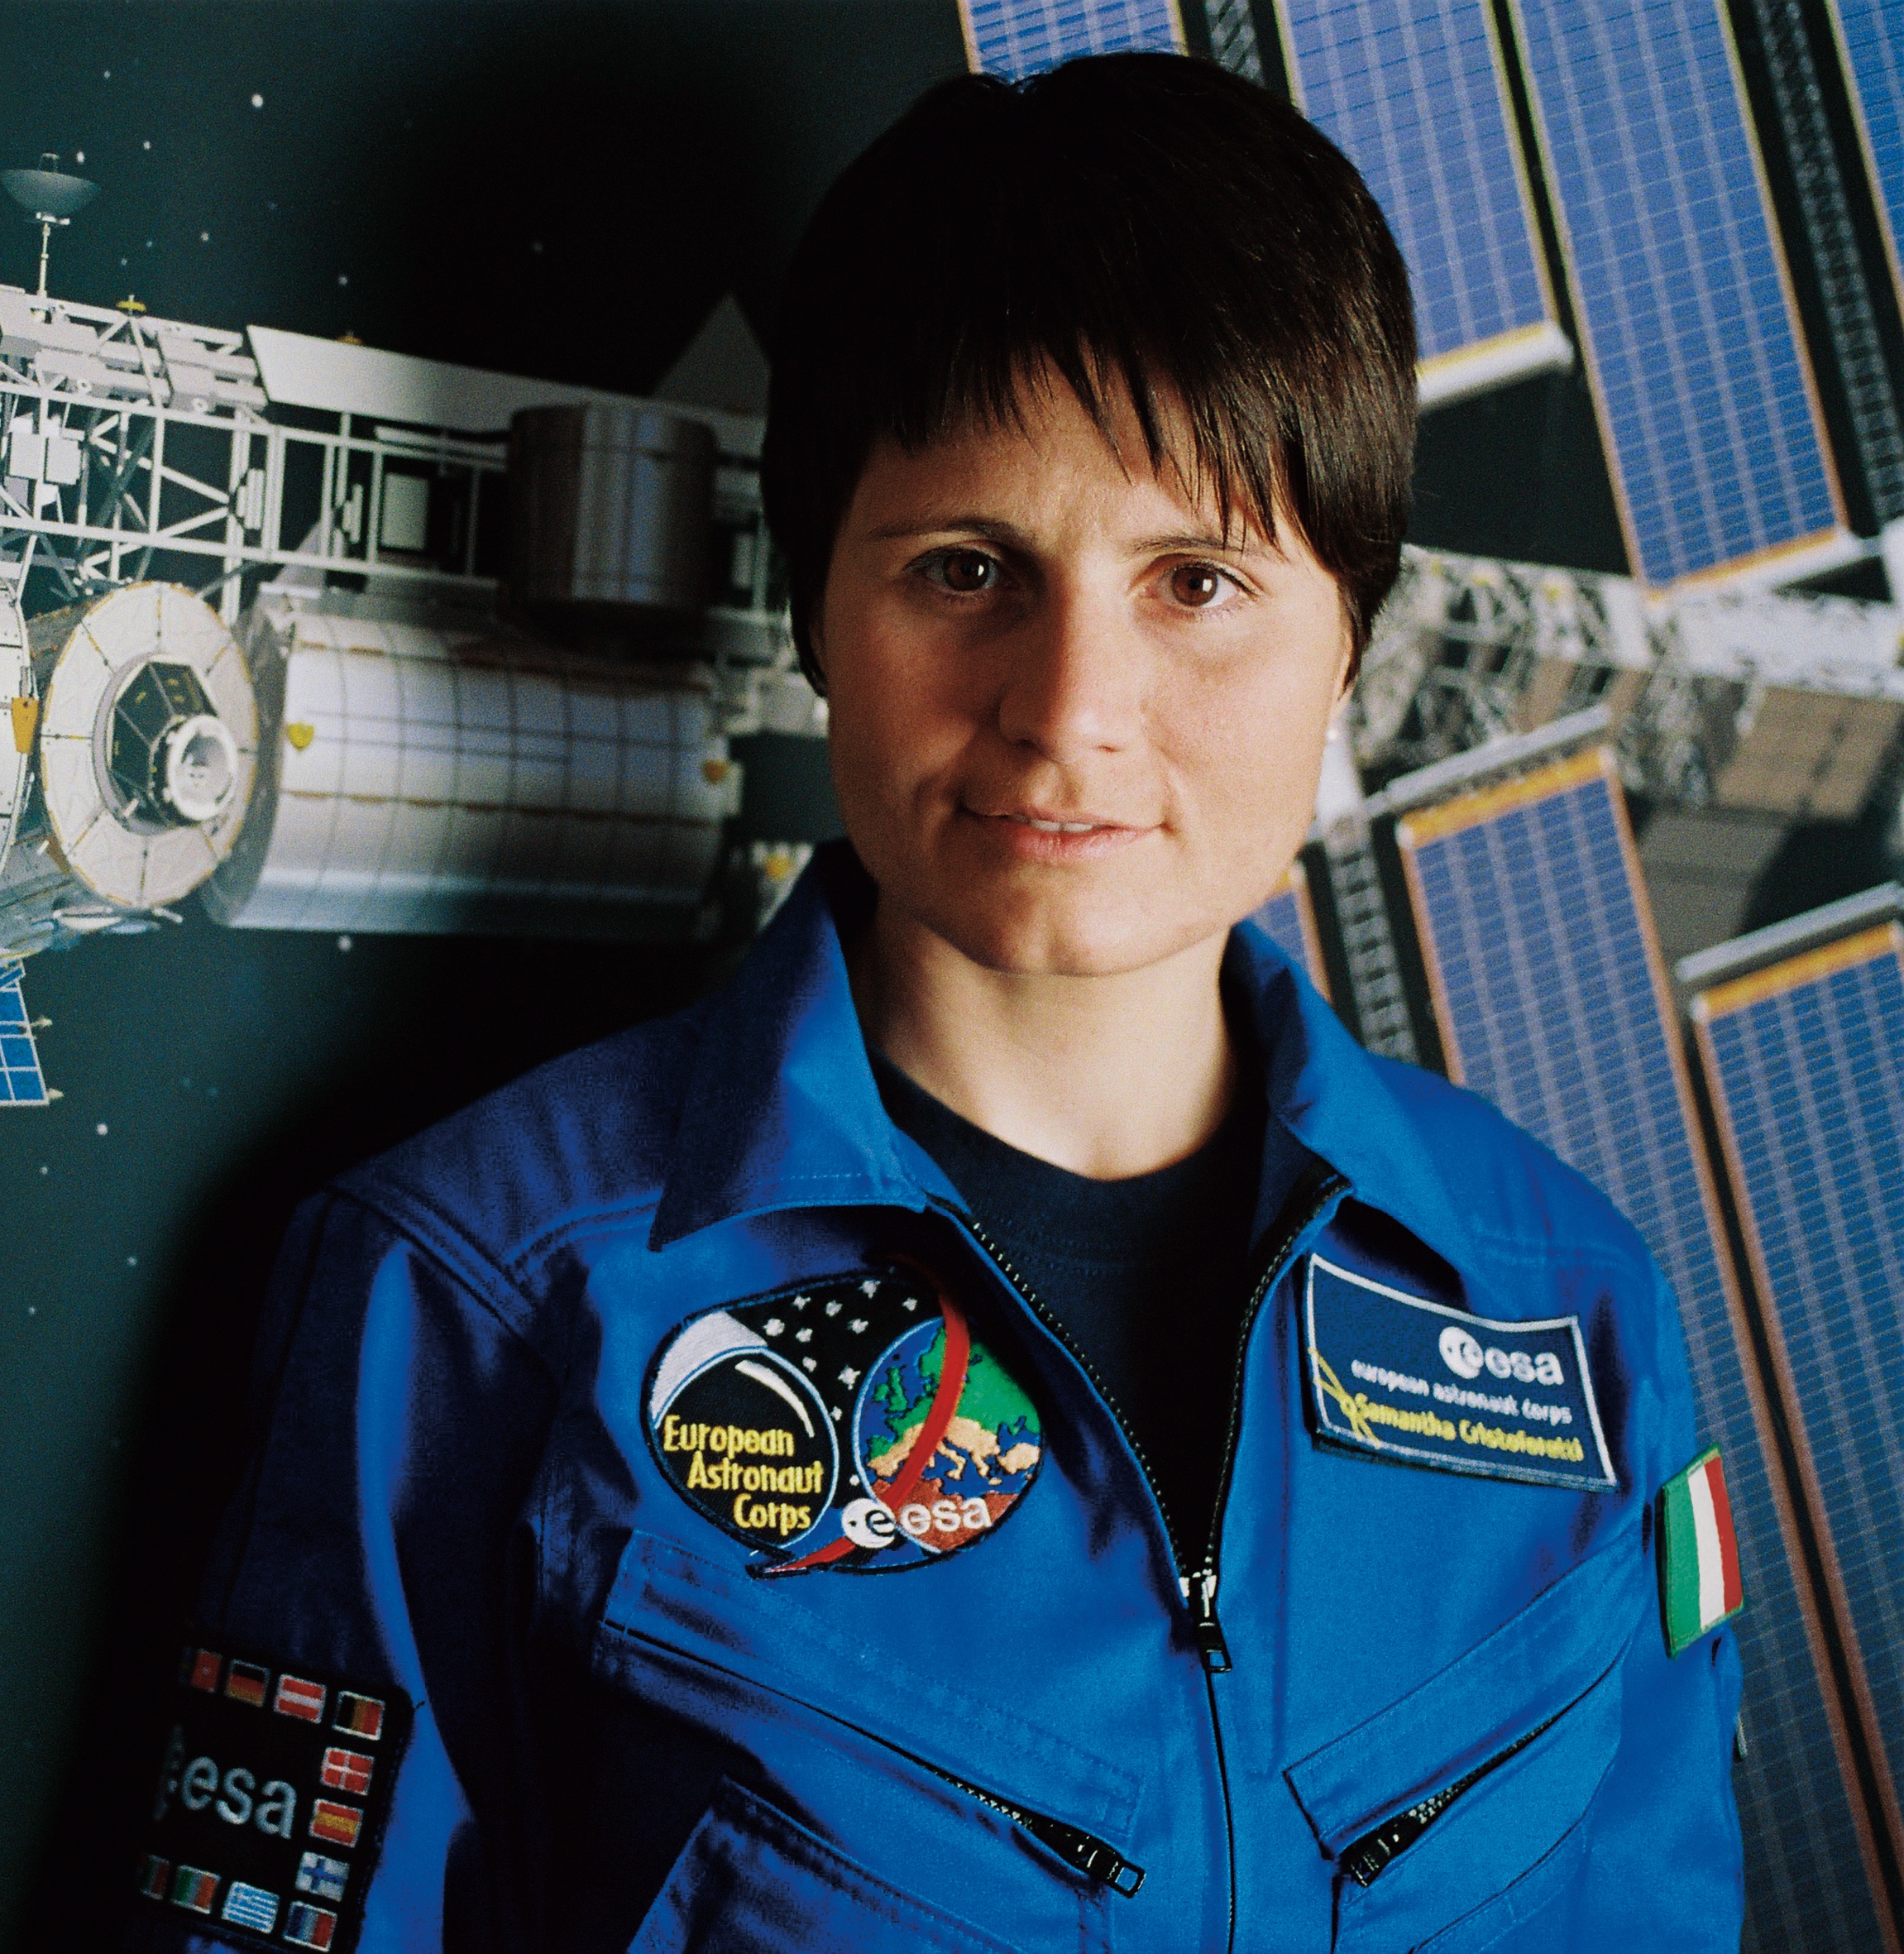 La parola a... Samantha Cristoforetti - Astronauta dell'ESA, Capitano e pilota dell'AM, protagonista di Futura, la seconda missione di lunga durata dell'ASI